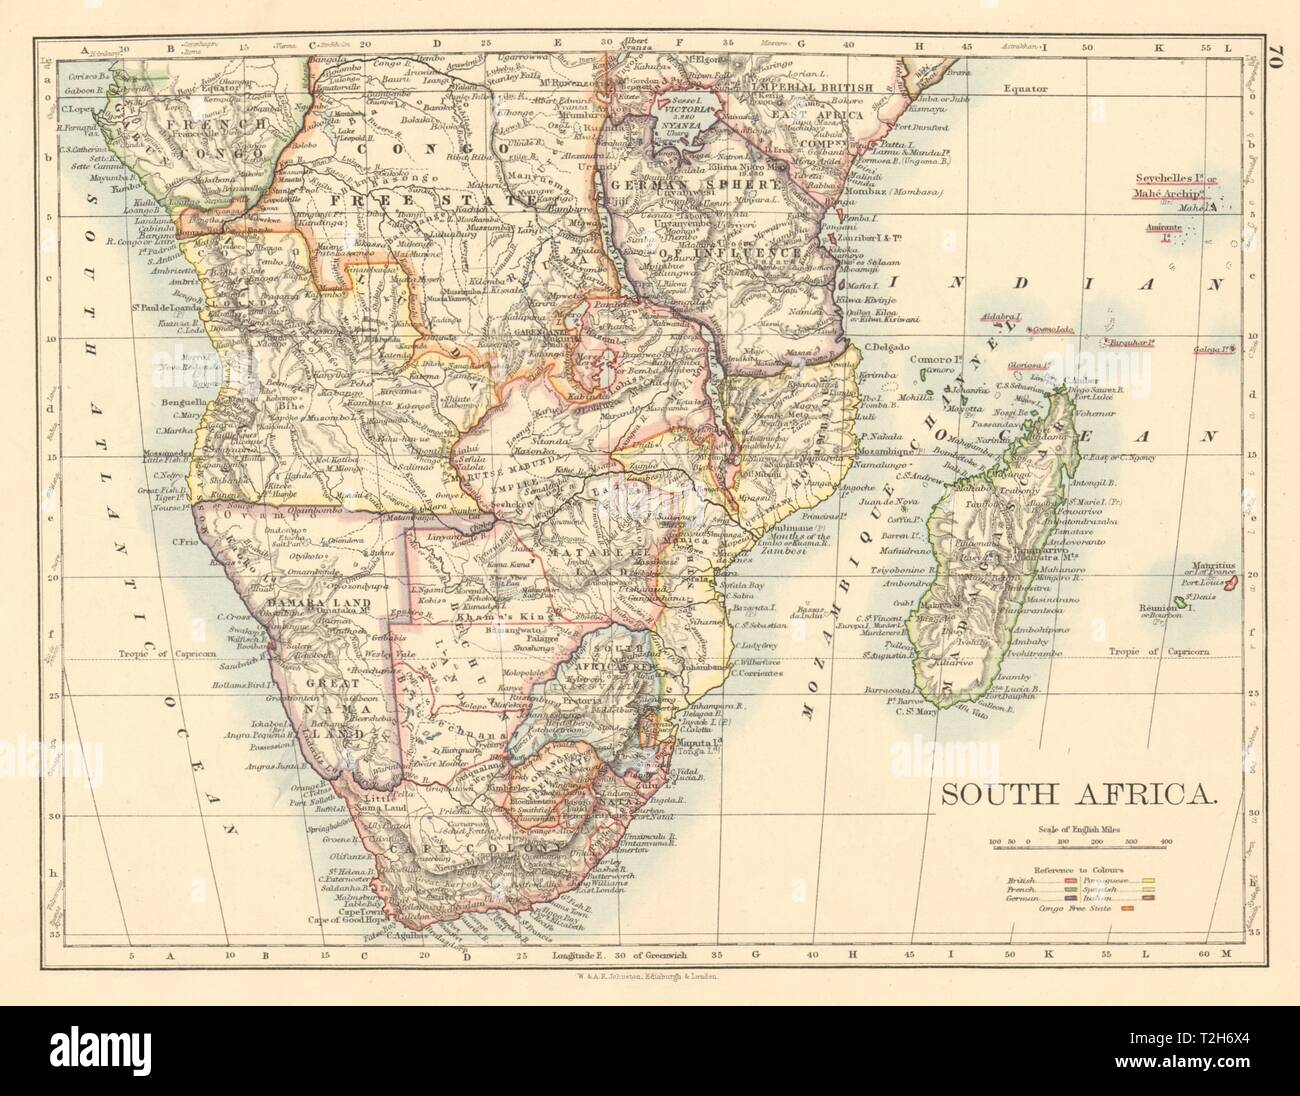 Le sud de l'Afrique coloniale britannique, allemand/français/portugais/JOHNSTON 1892 map Banque D'Images